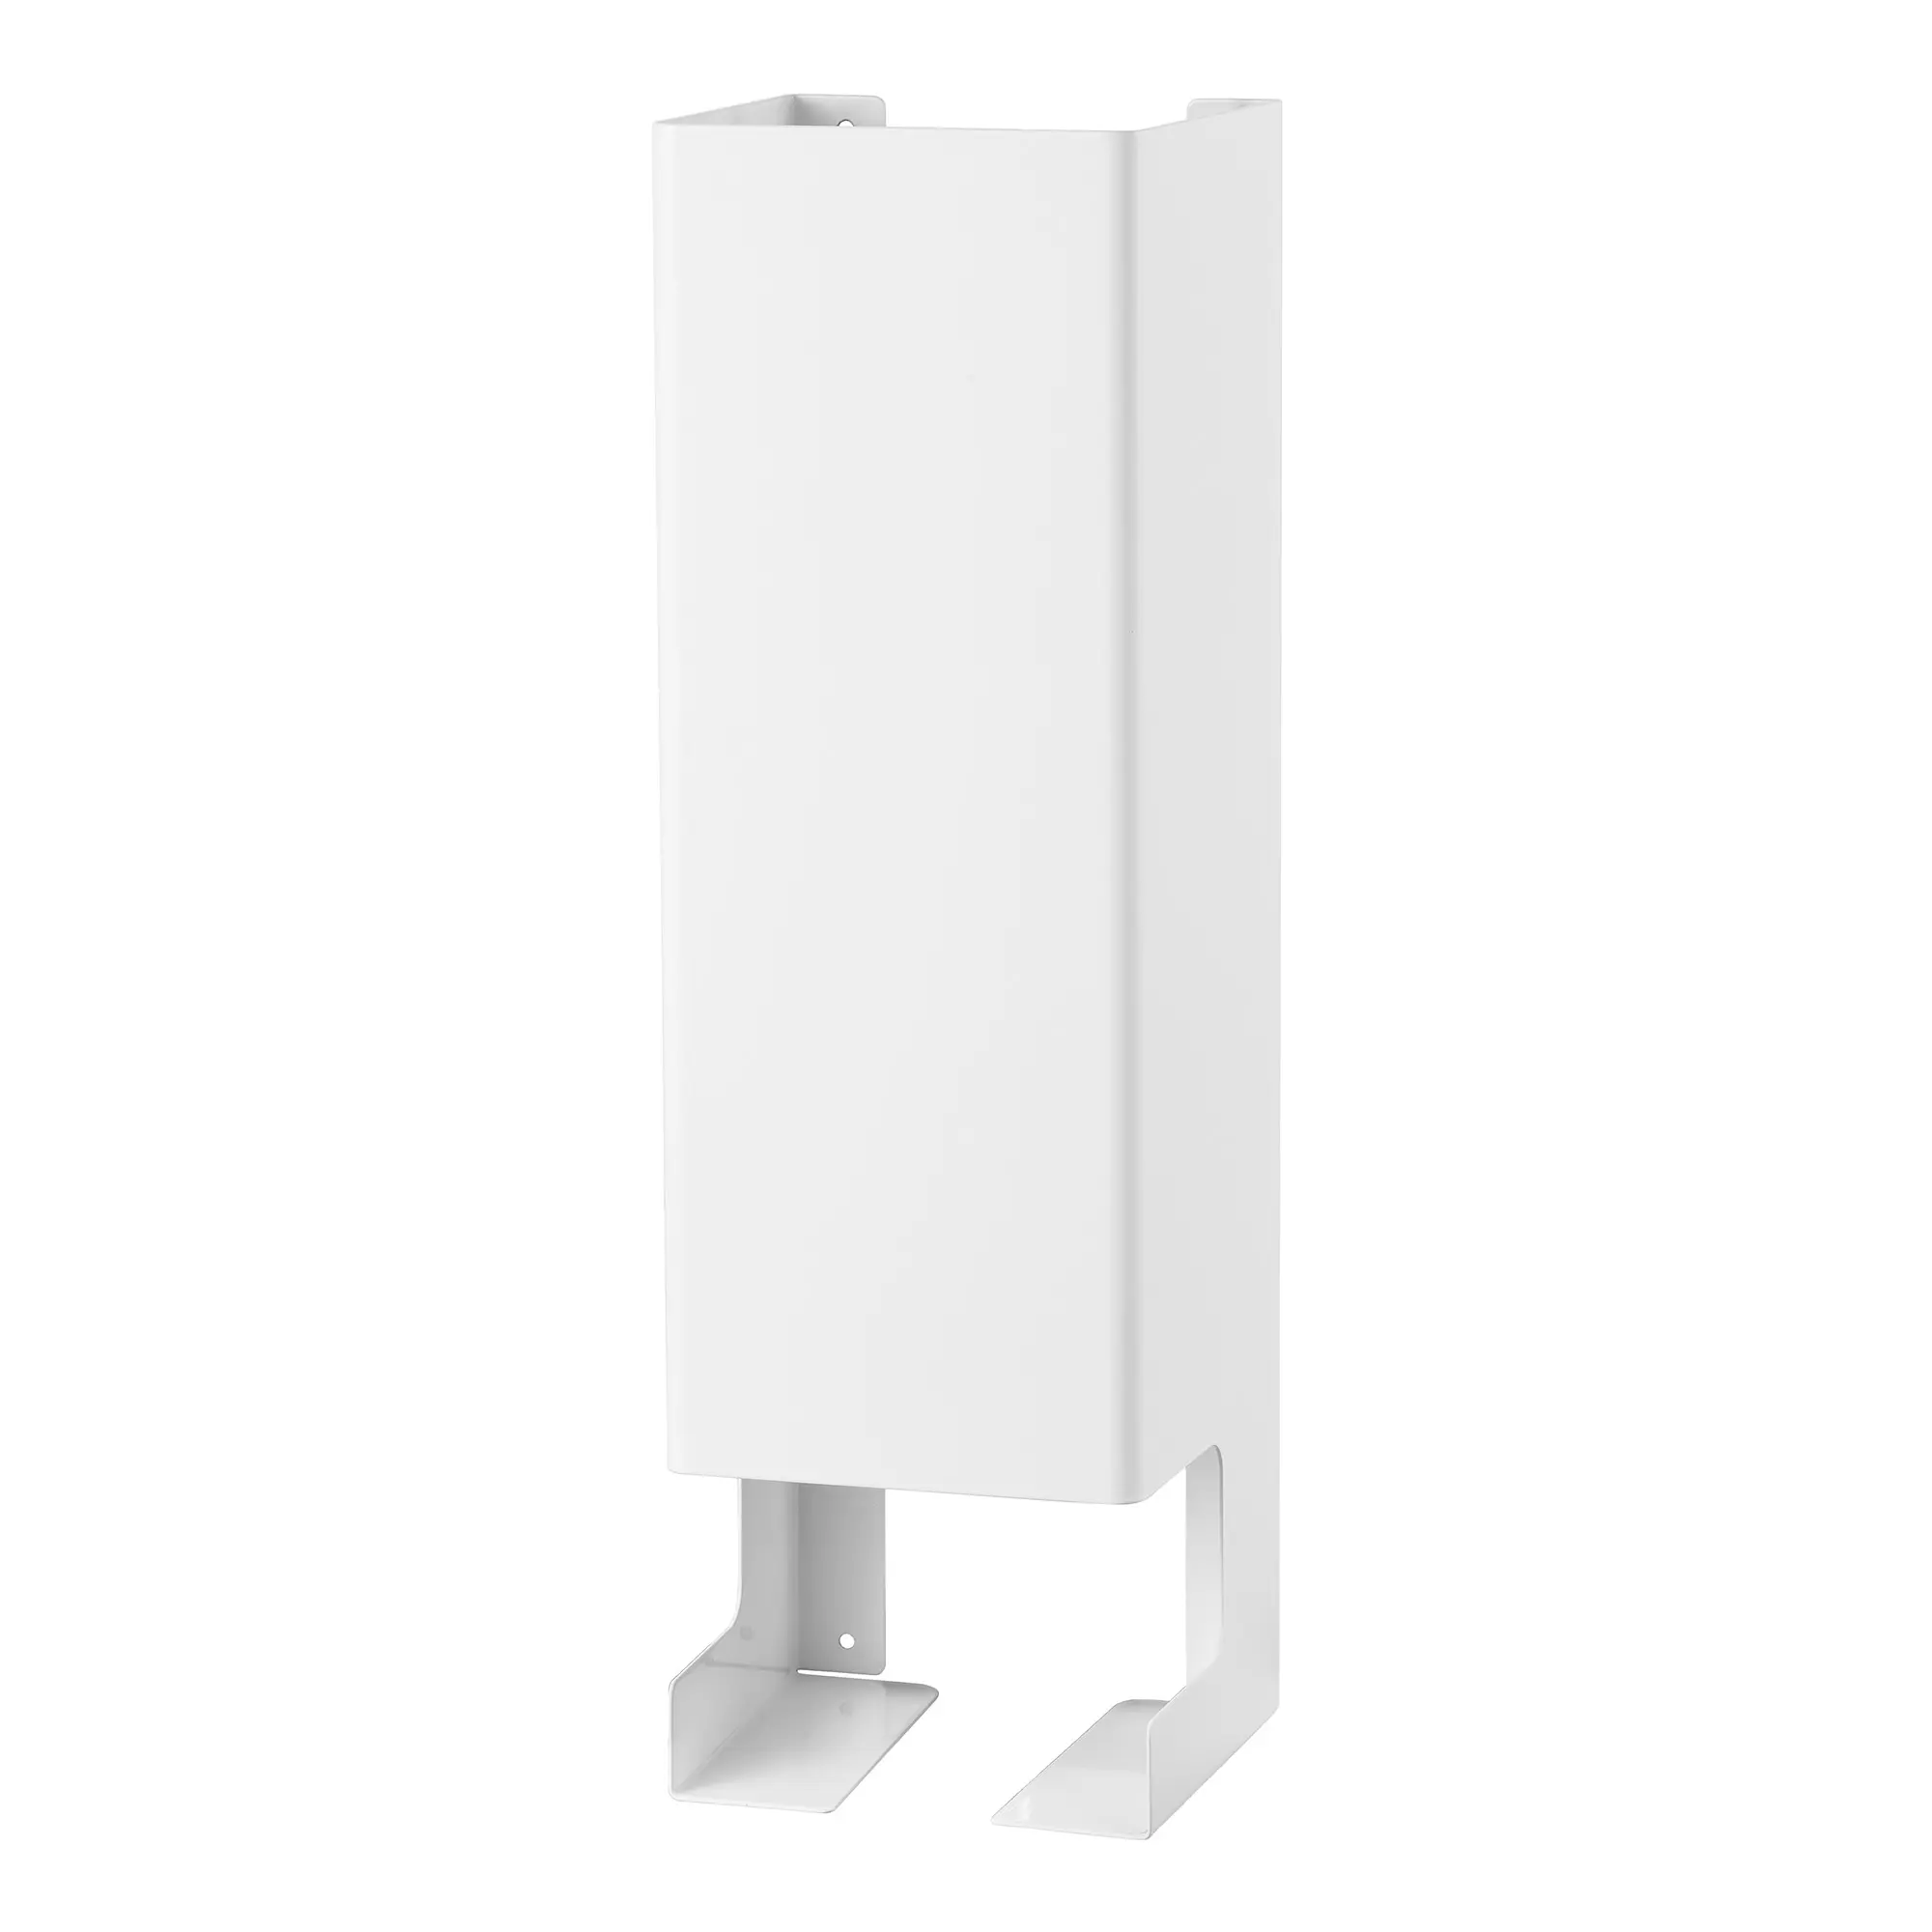 MediQo-line Toilettenpapier-Ersatzrollenhalter 5-fach RAC weiß für 5 Ersatzrollen  13179